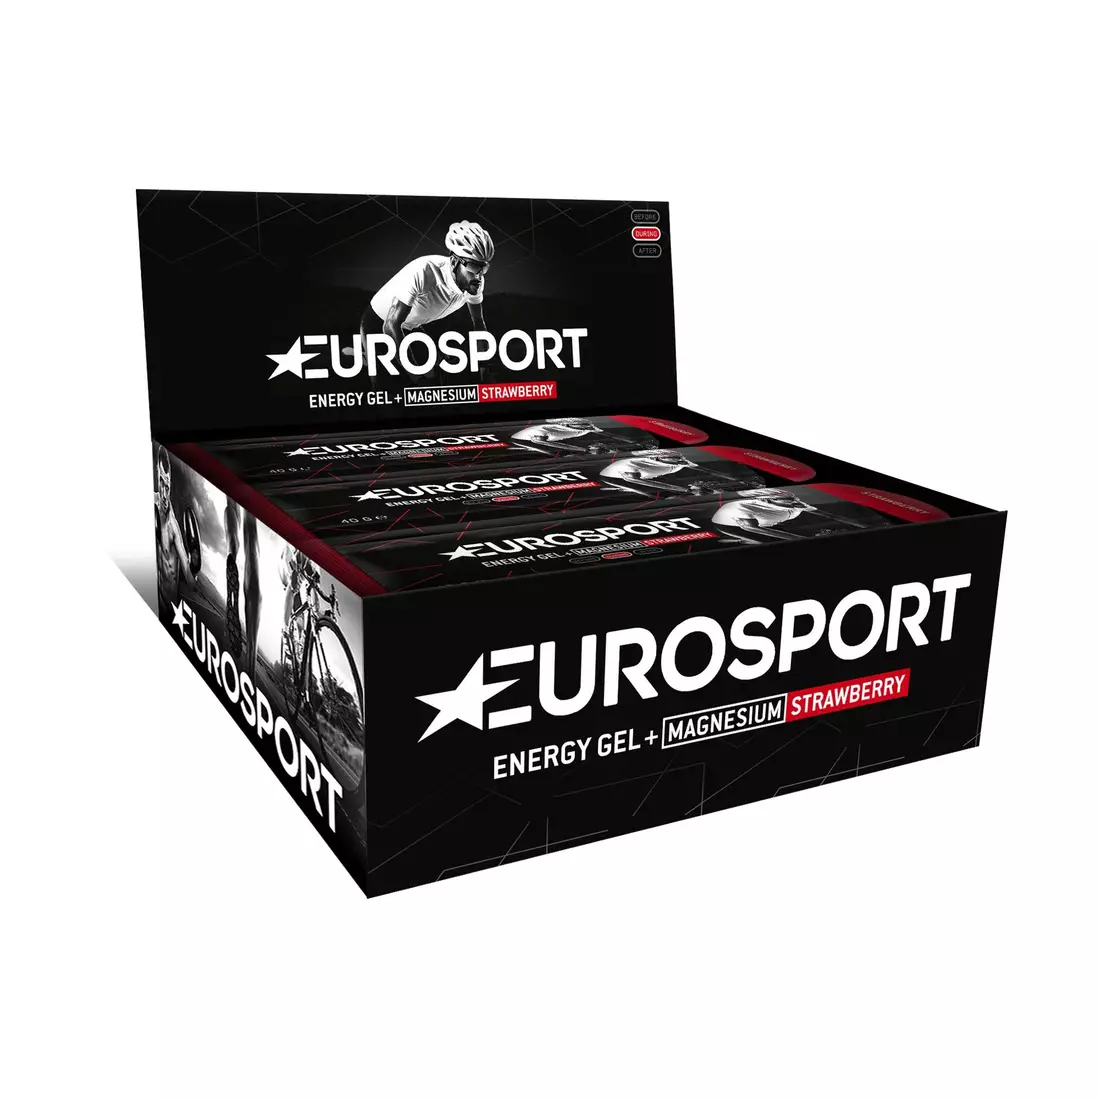 EUROSPORT energy gel NUTRITION strawberry +magnesium 40g 20 pieces E0028